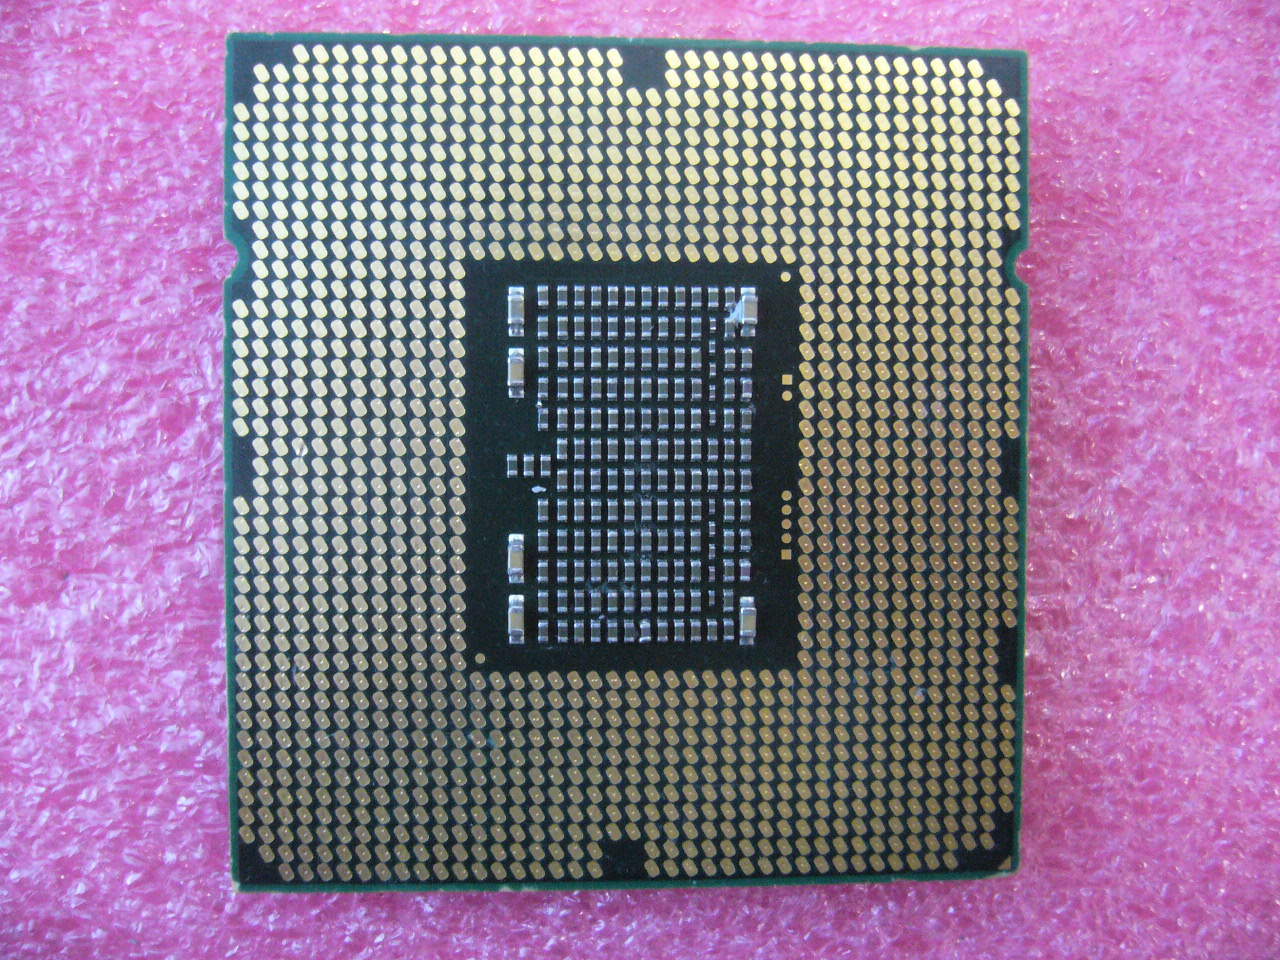 QTY 1x INTEL Six-Cores Xeon CPU E5649 2.53GHZ/12MB LGA1366 SLBZ8 mem b not work - Click Image to Close